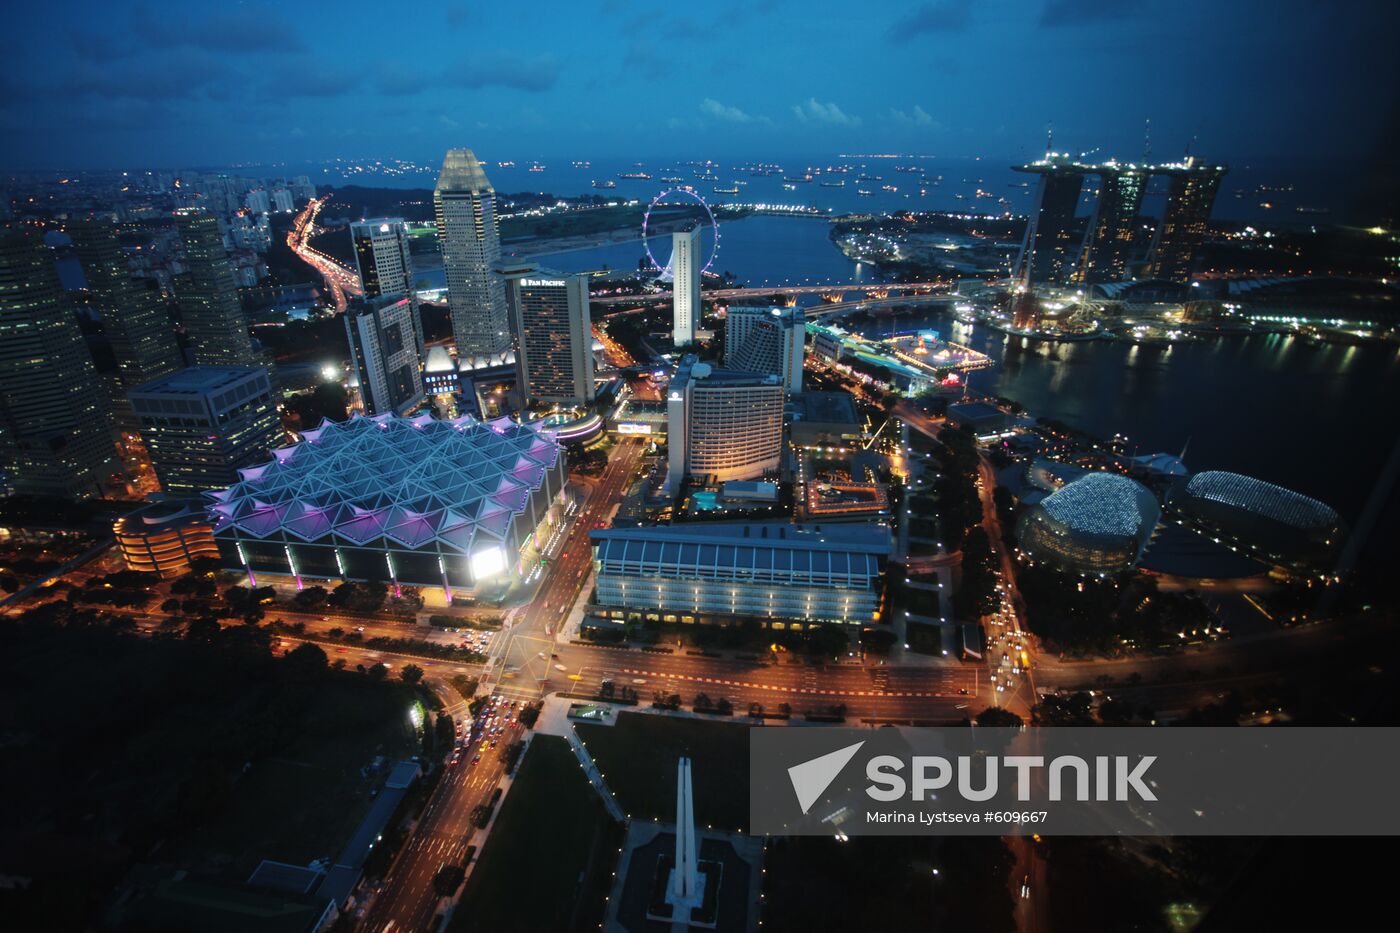 Night view of Singapore